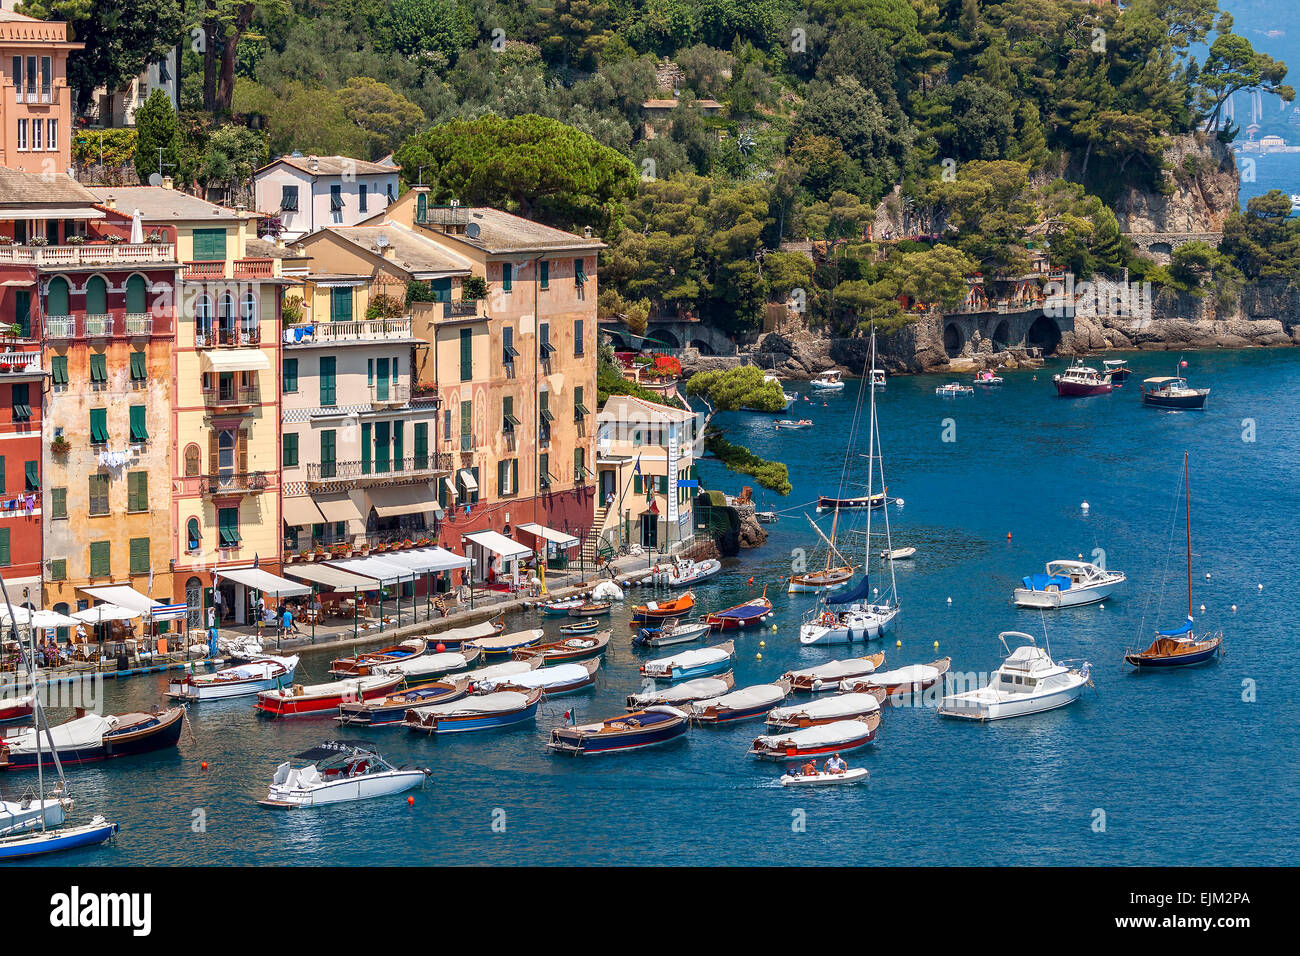 Bunte Häuser und Boote in Portofino - berühmte Dorf an der italienischen Riviera. Stockfoto